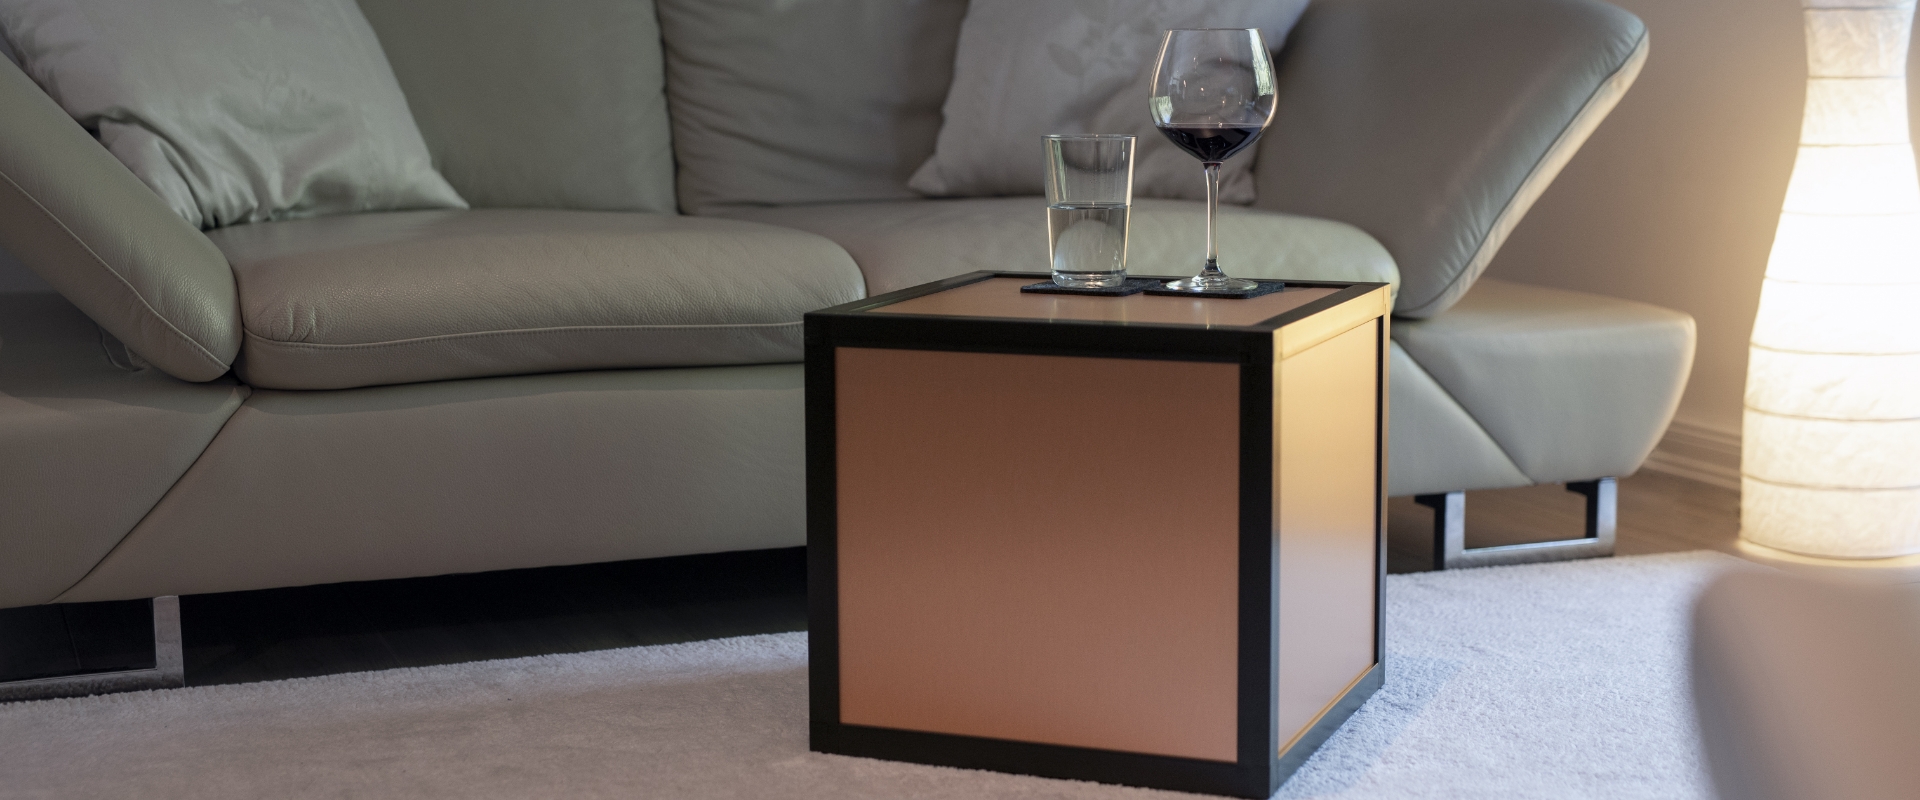 Eine würfelförmige boxula mit Rahmenfarbe Rich Black und Seitenwänden in Copper brushed steht auf einem Teppich in einem Wohnzimmer, nebenan befindet sich ein Sofa. Auf der boxula stehen ein Glas mit Wasser und ein befülltes Weinglas.